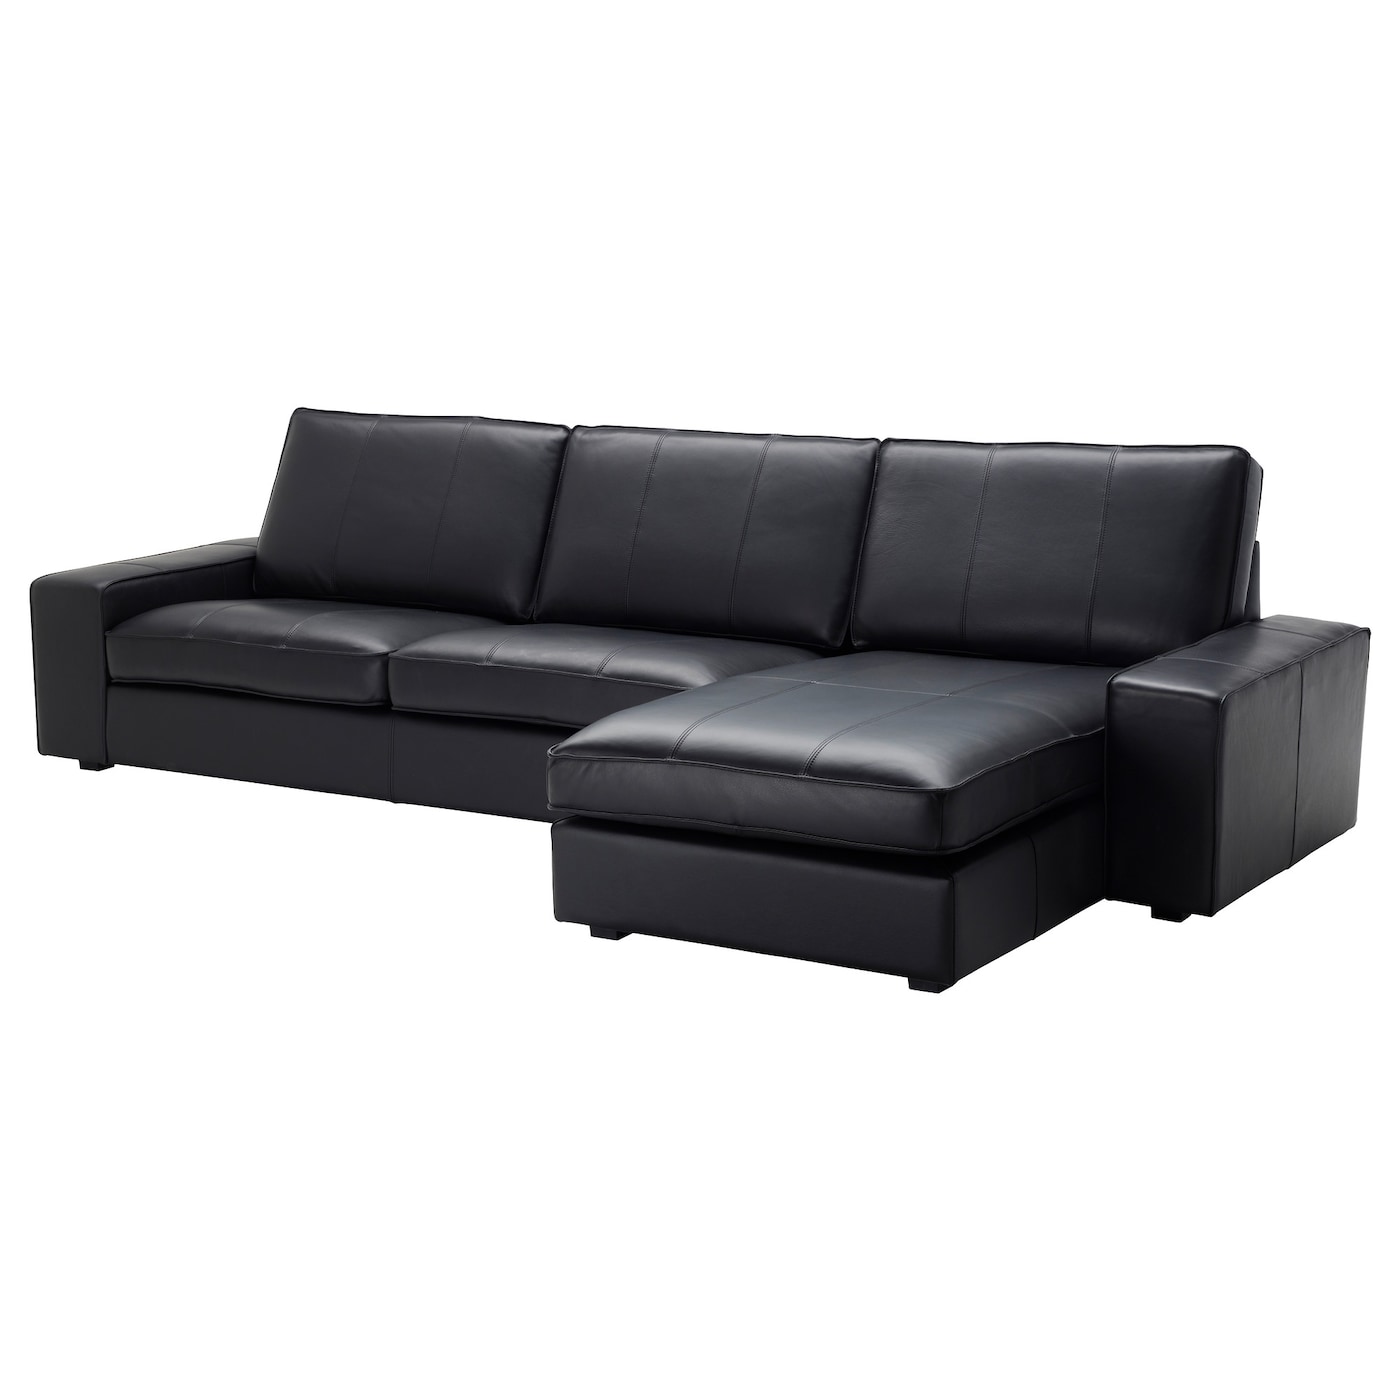 4-местный диван и шезлонг - IKEA KIVIK, 318х163х83 см, черный, кожа, КИВИК ИКЕА